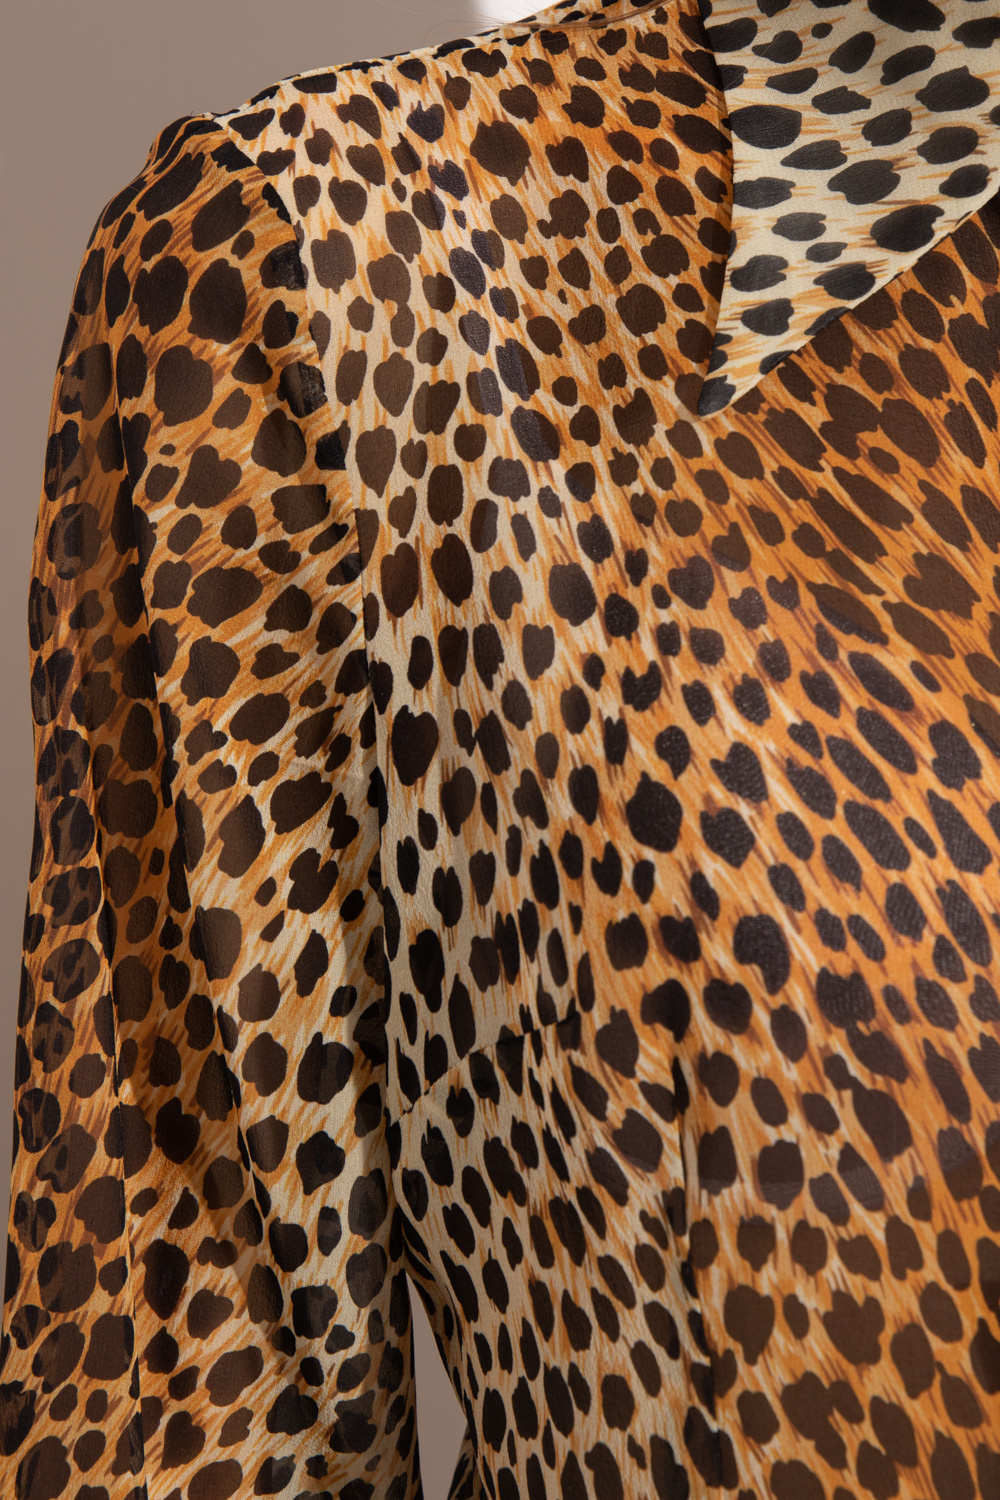 Dolce & Gabbana 724782 Silk shirt with animal motif